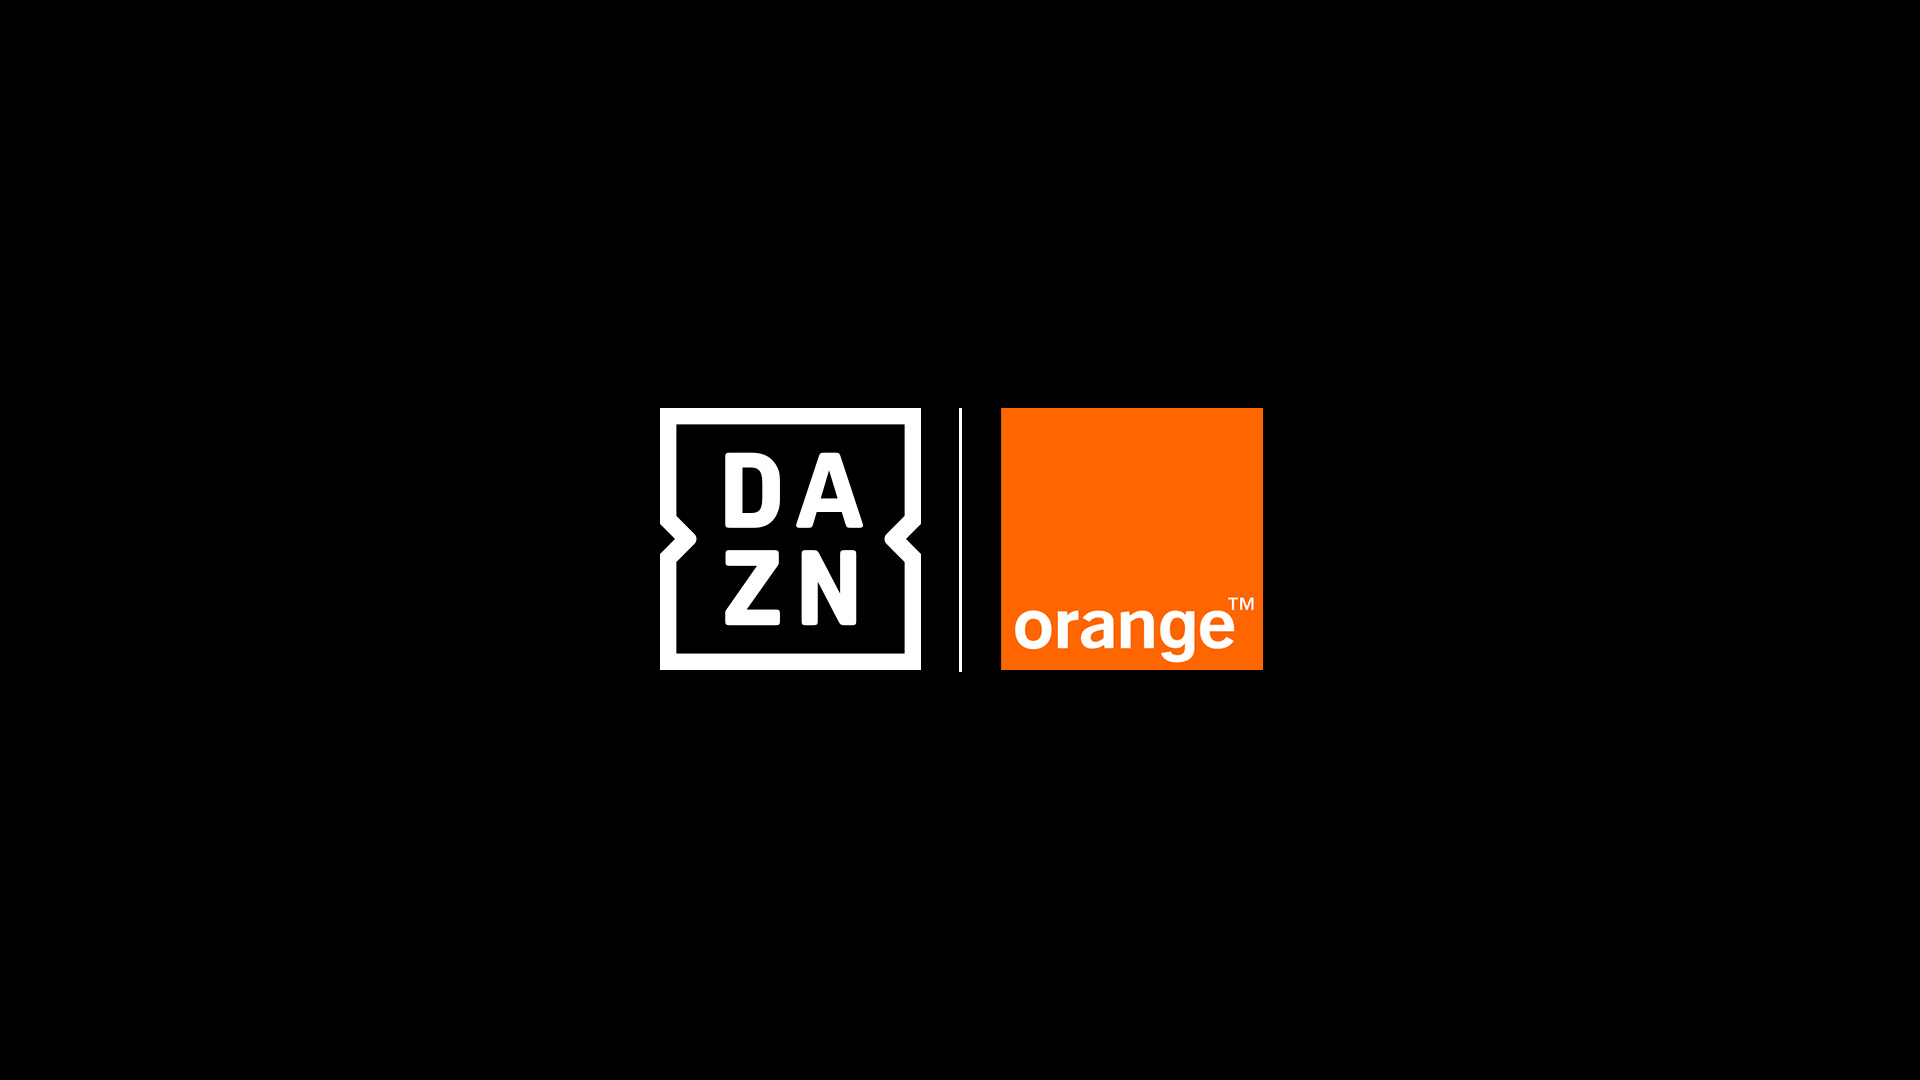 dazn-orange-ftr